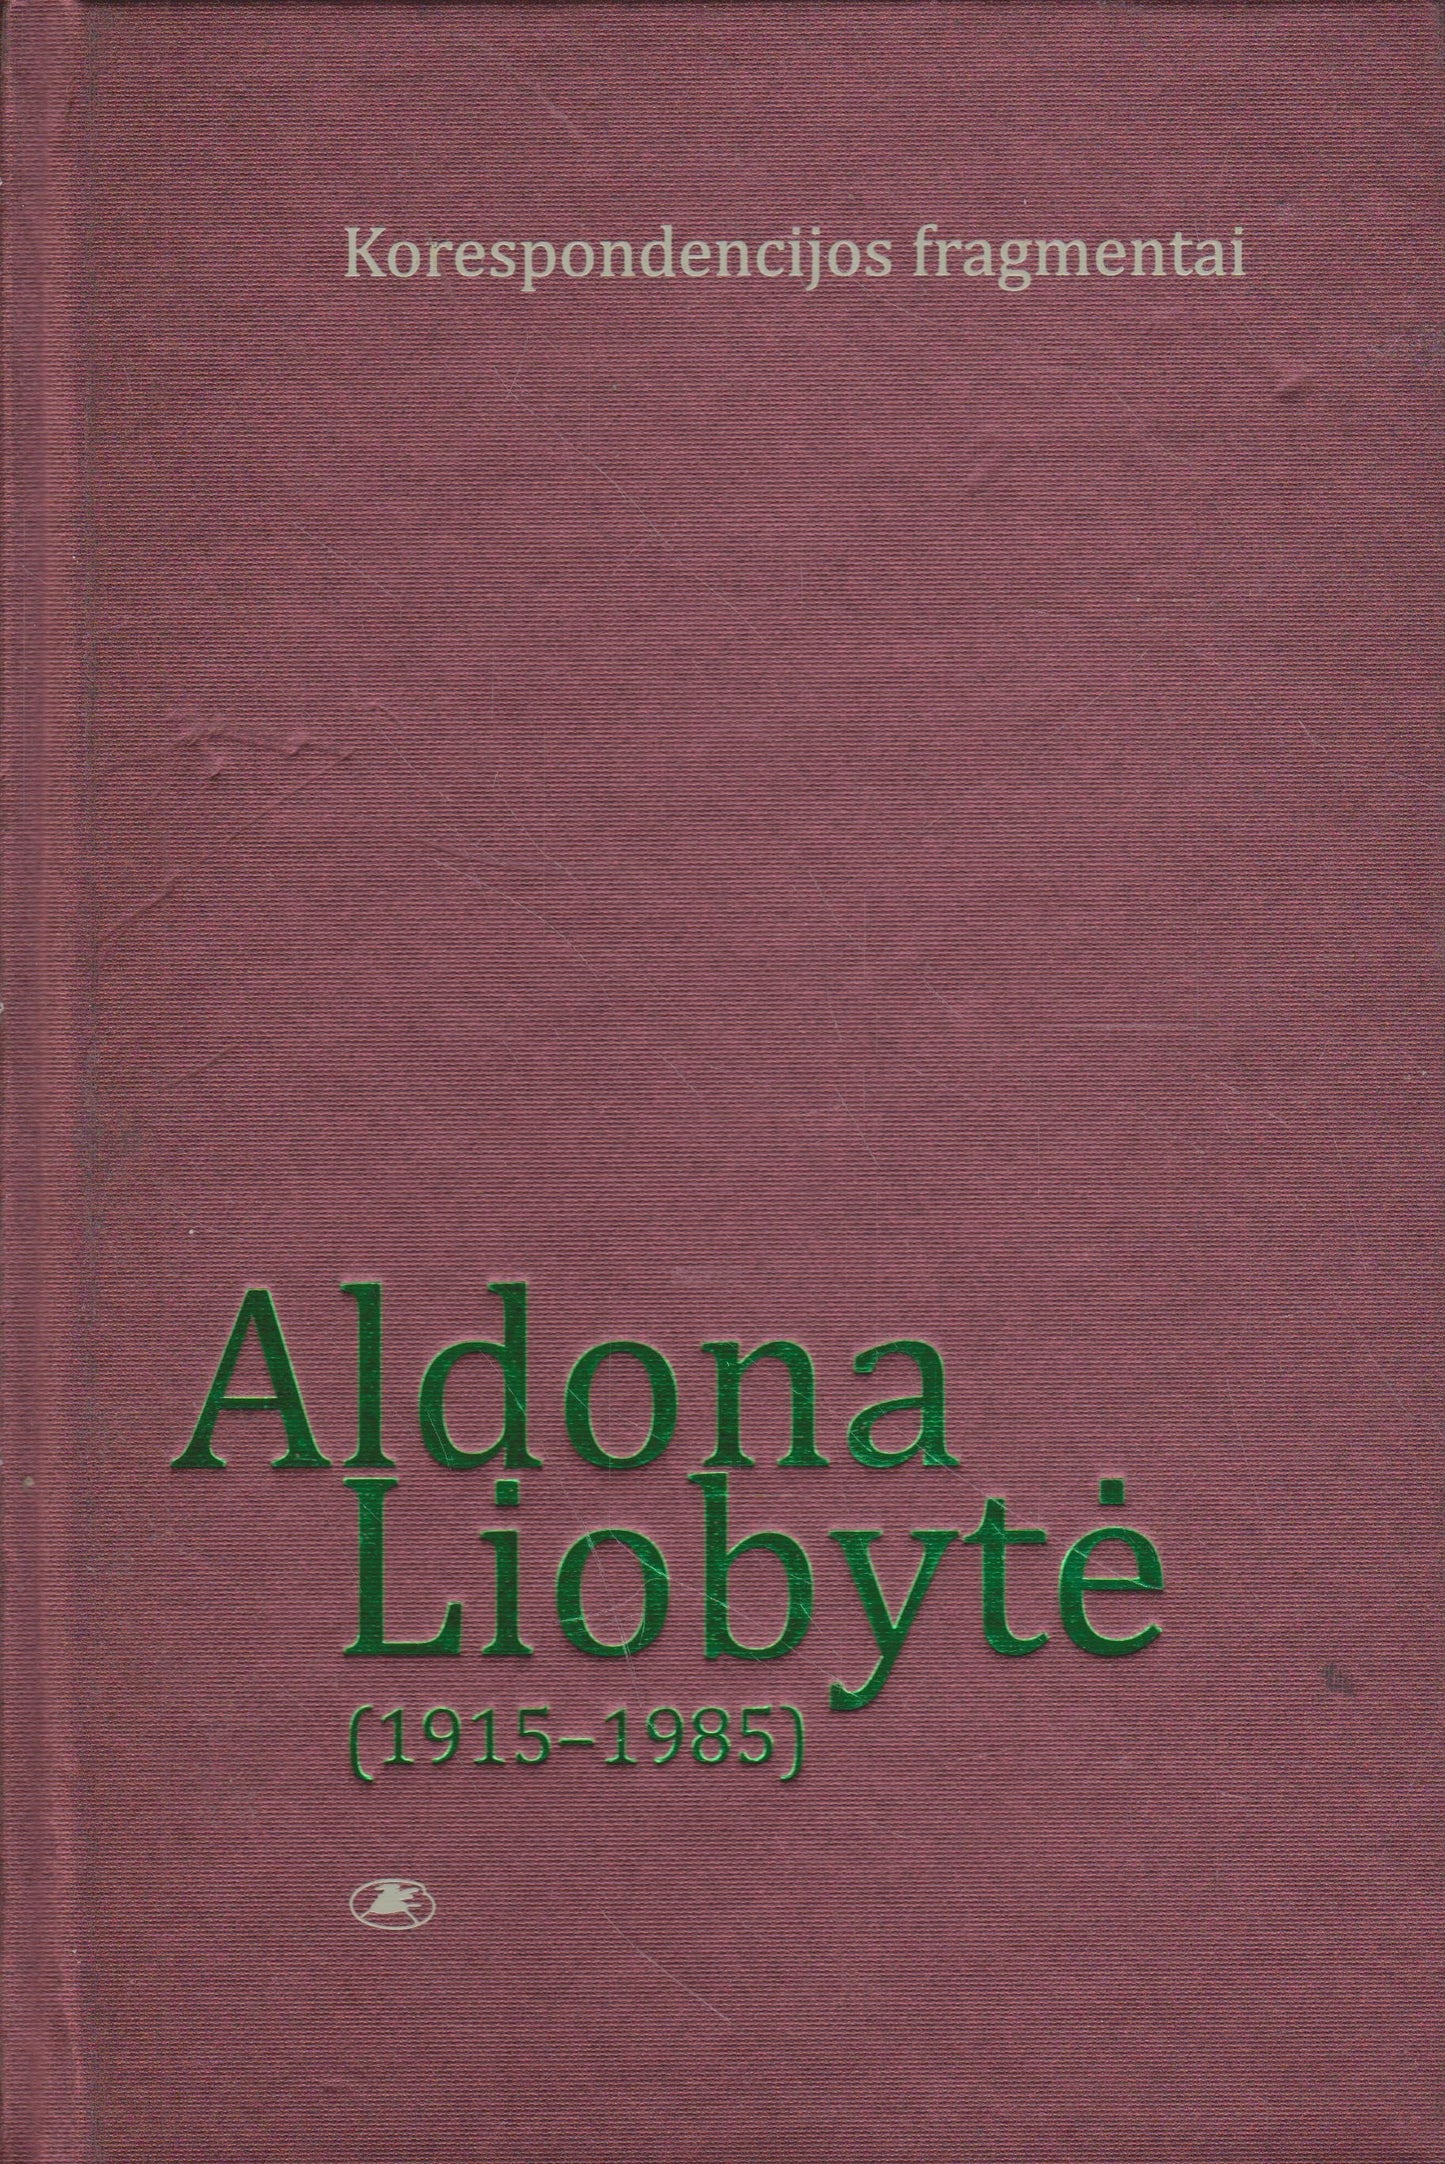 Aldona Liobytė - Korespondencijos fragmentai